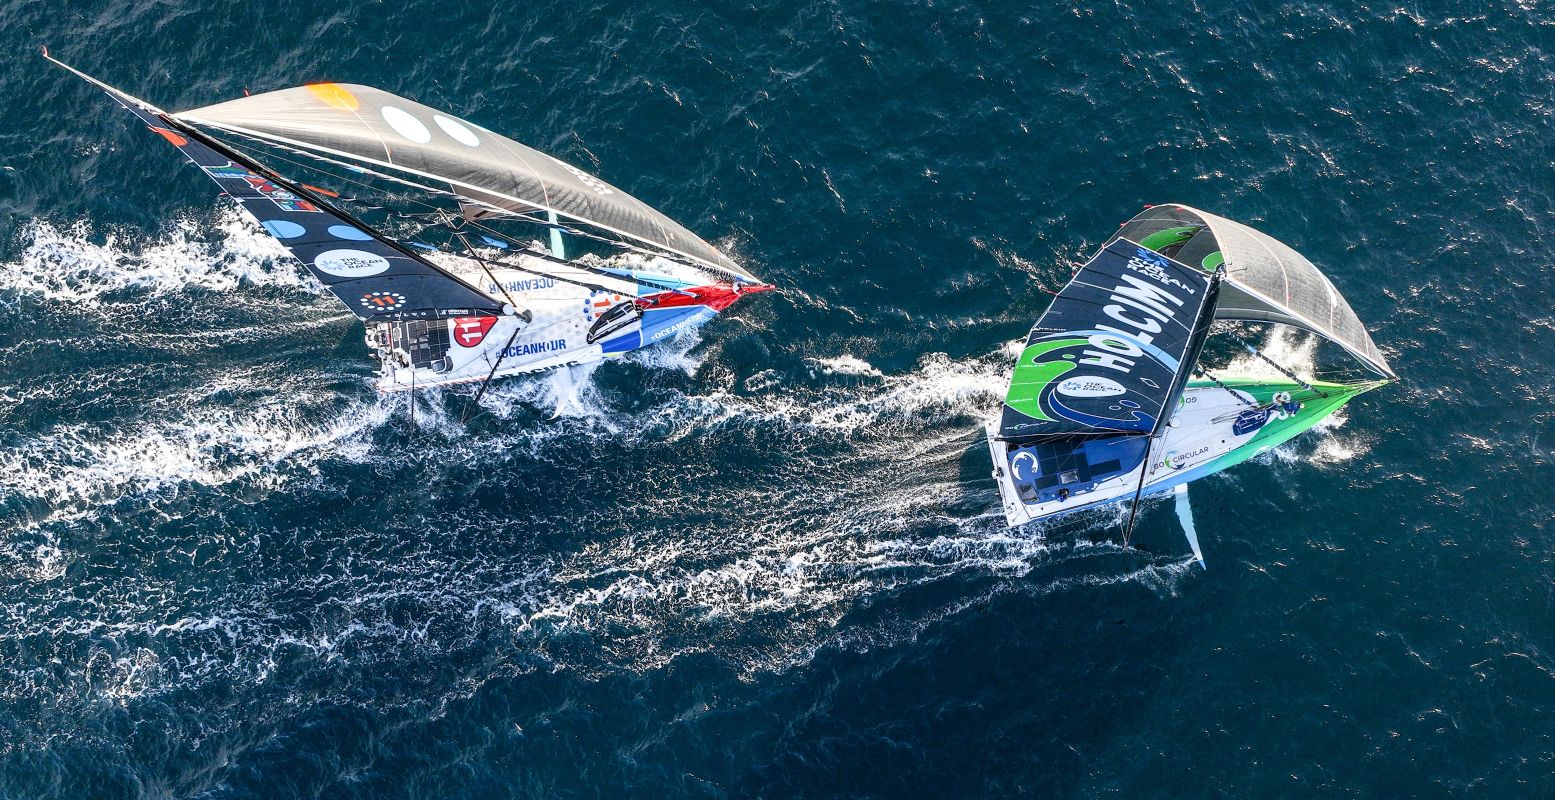 De snelle zeilboten van The Ocean Race komen op zondag 11 juni aan in de haven van Scheveningen. Foto: Tig Sports